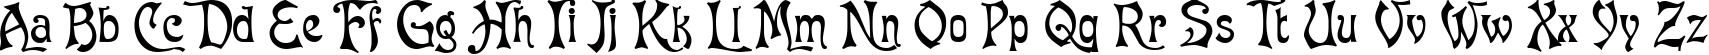 Пример написания английского алфавита шрифтом Baron Munchausen Normal